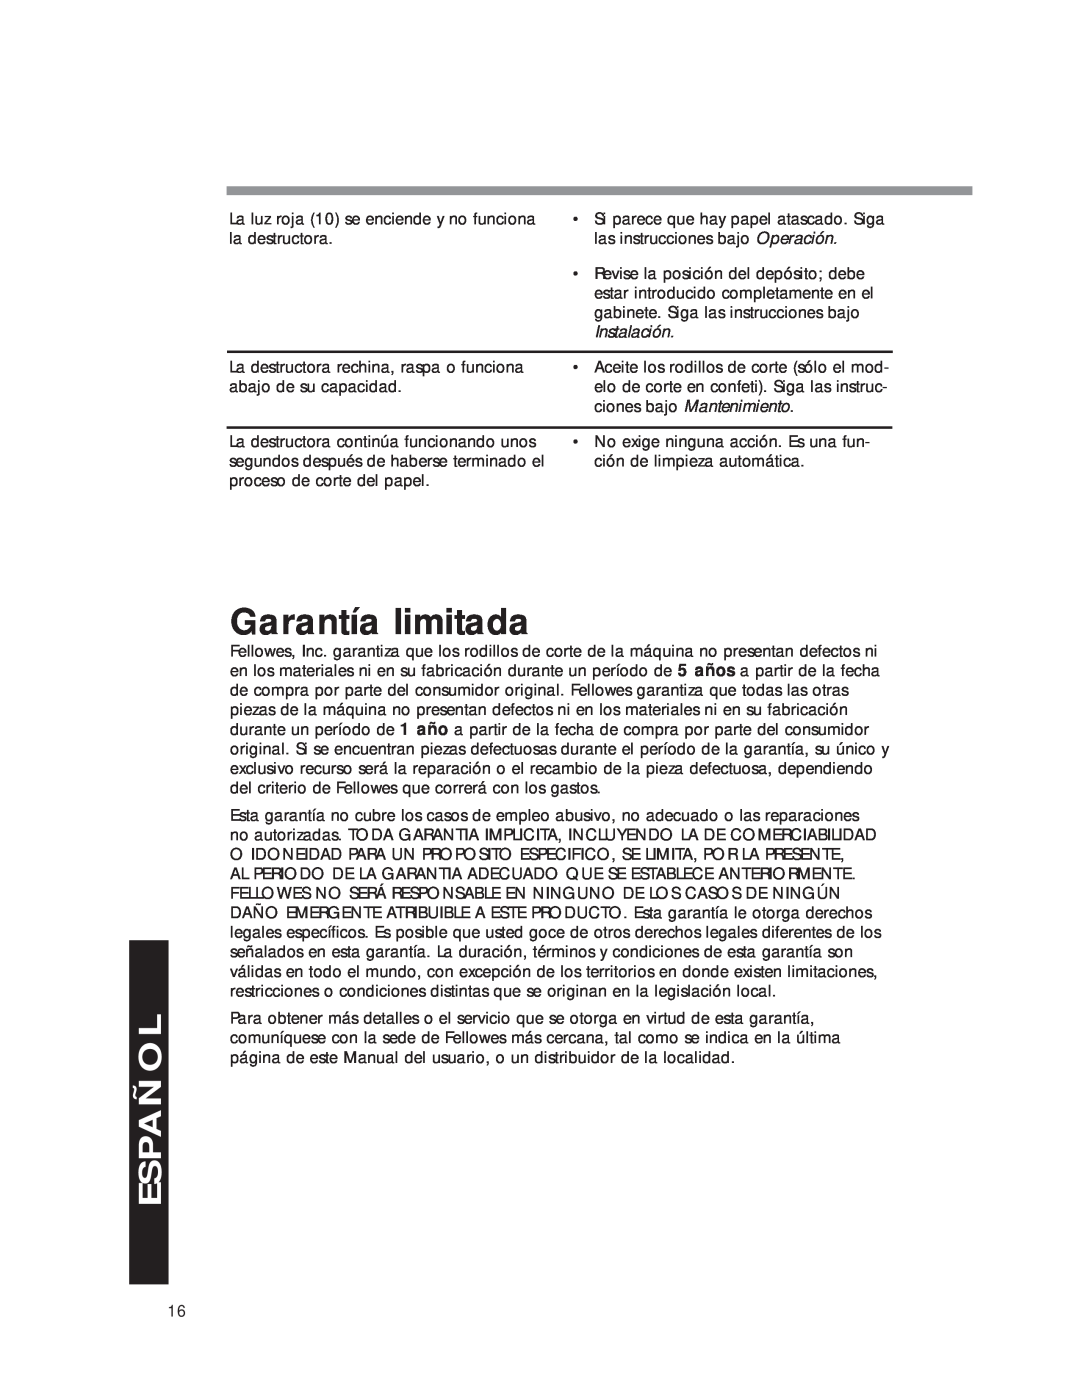 Fellowes DM8C manual Garantía limitada, Español 